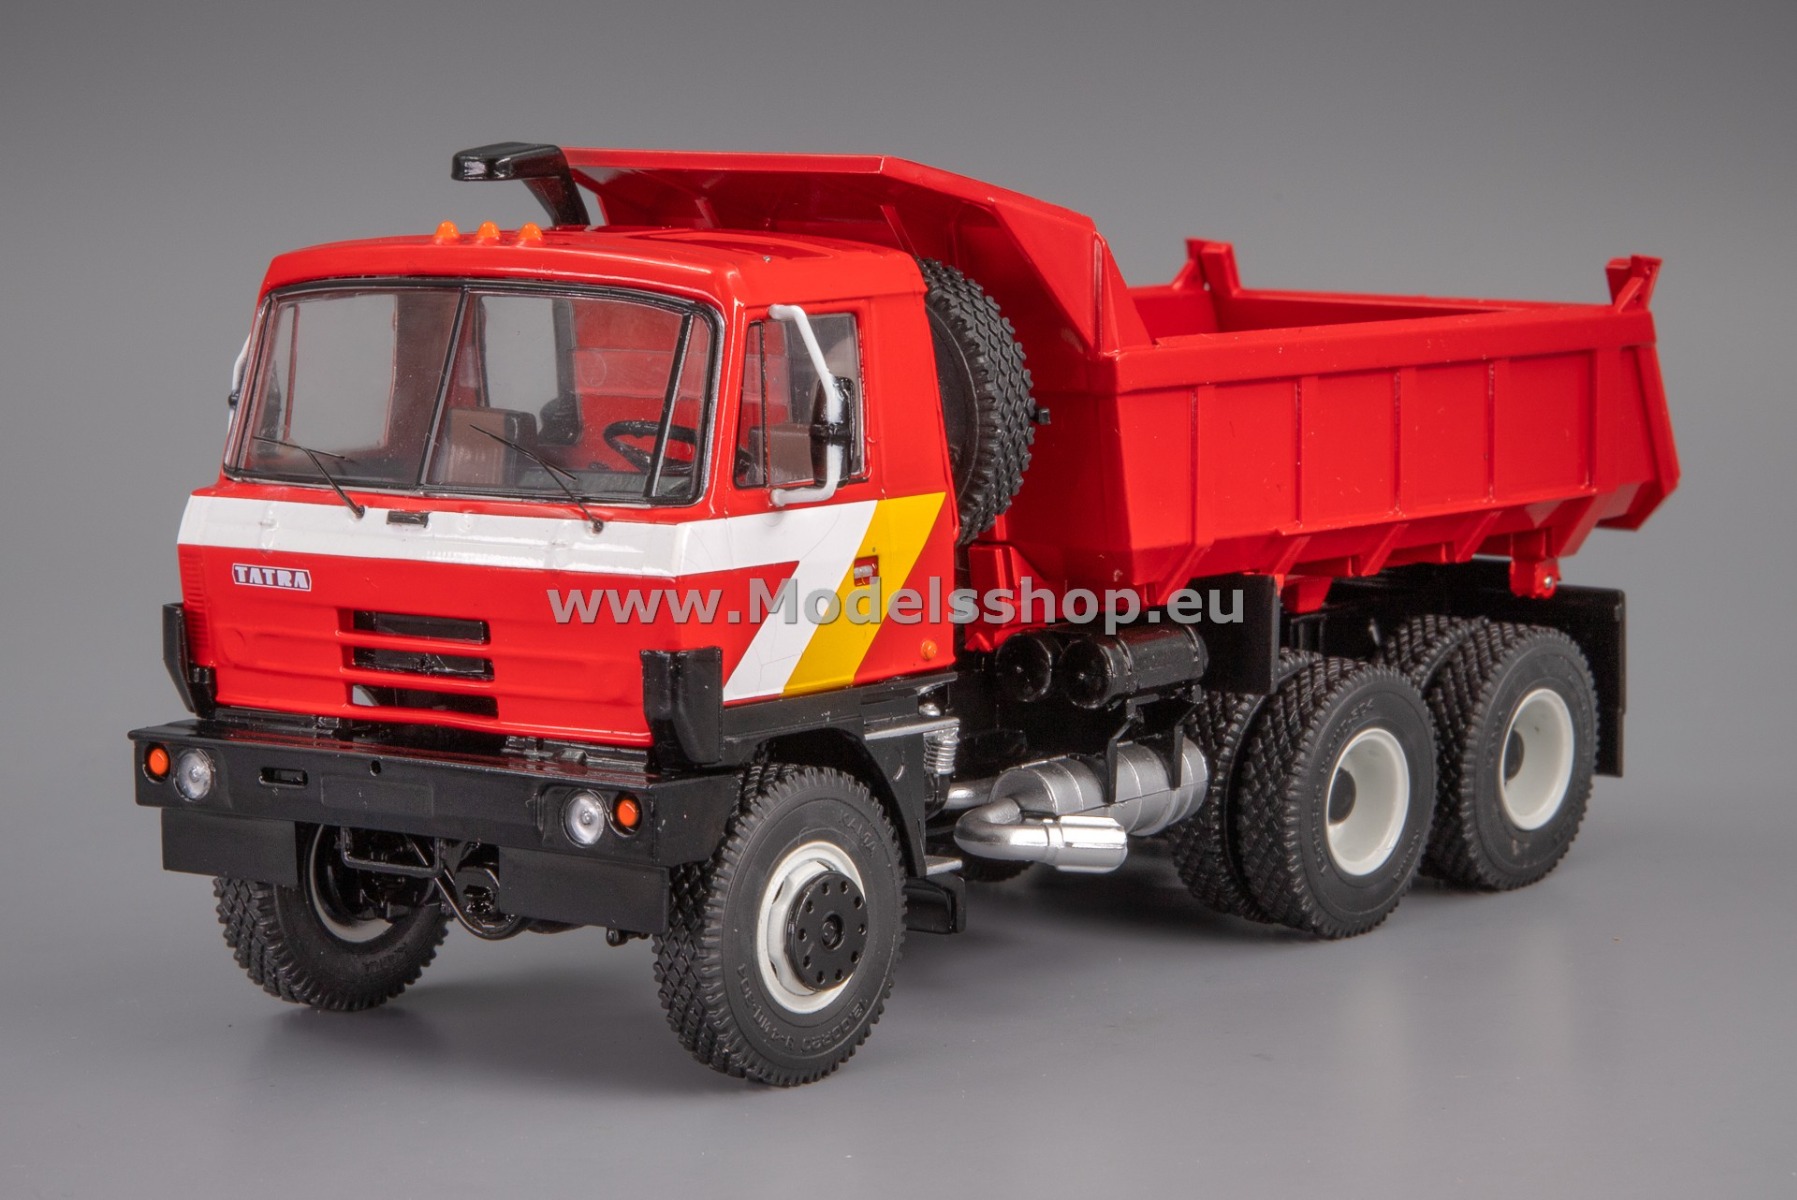 PCL47159 Tatra 815 S1 dump truck /red/